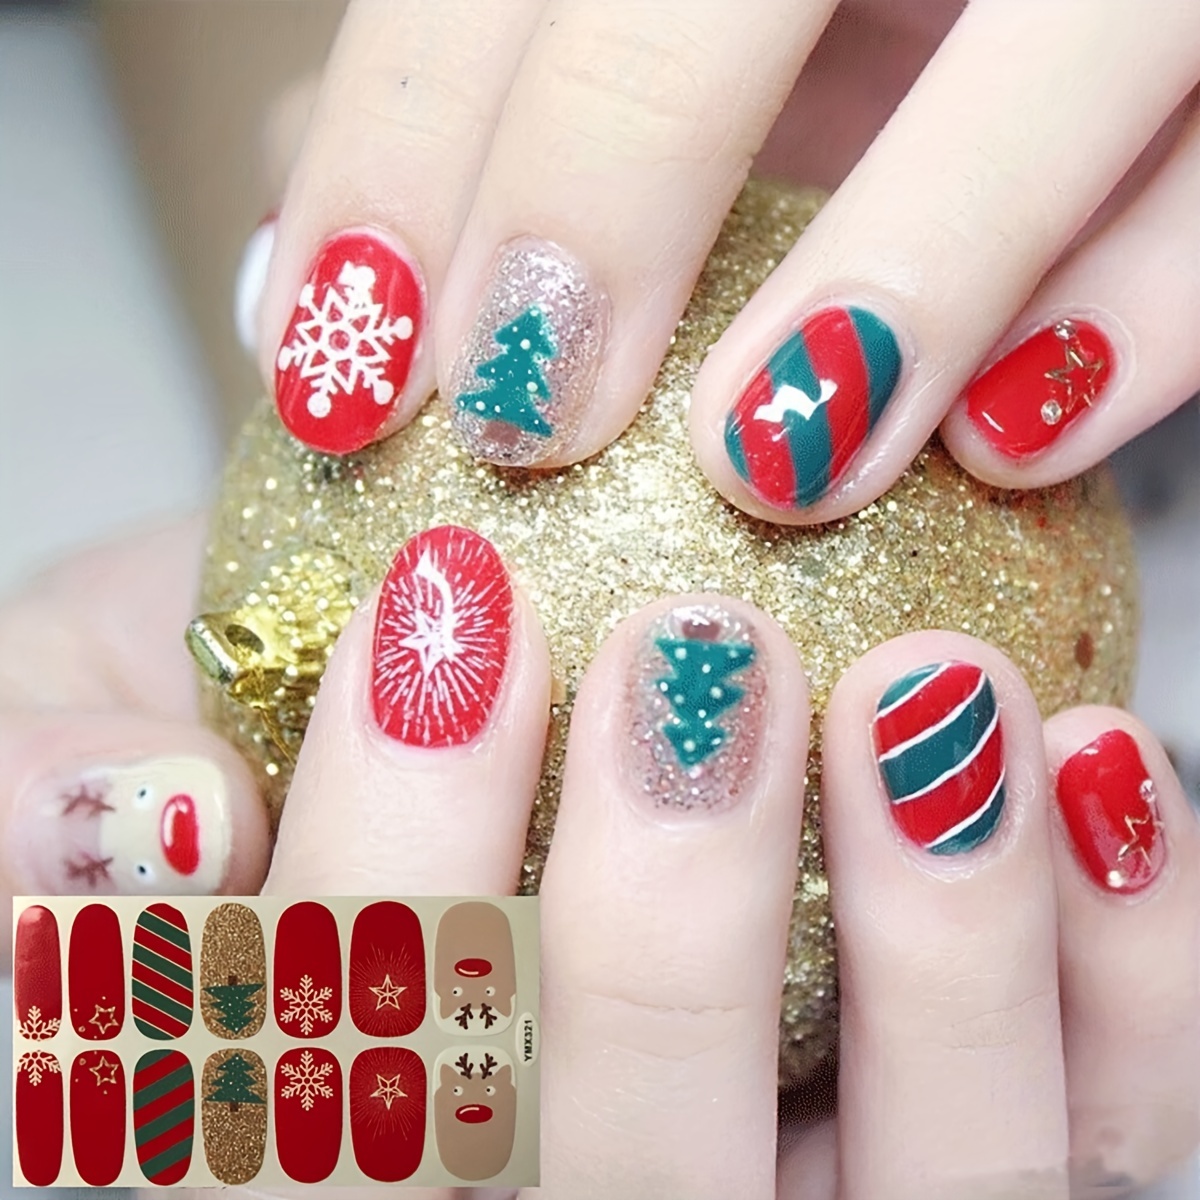 Set di 4 lime per unghie in scatola di fiammiferi a tema natalizio  Accessorio per unghie di bellezza Pedicure per manicure Regalo per lei e  Natale -  Italia